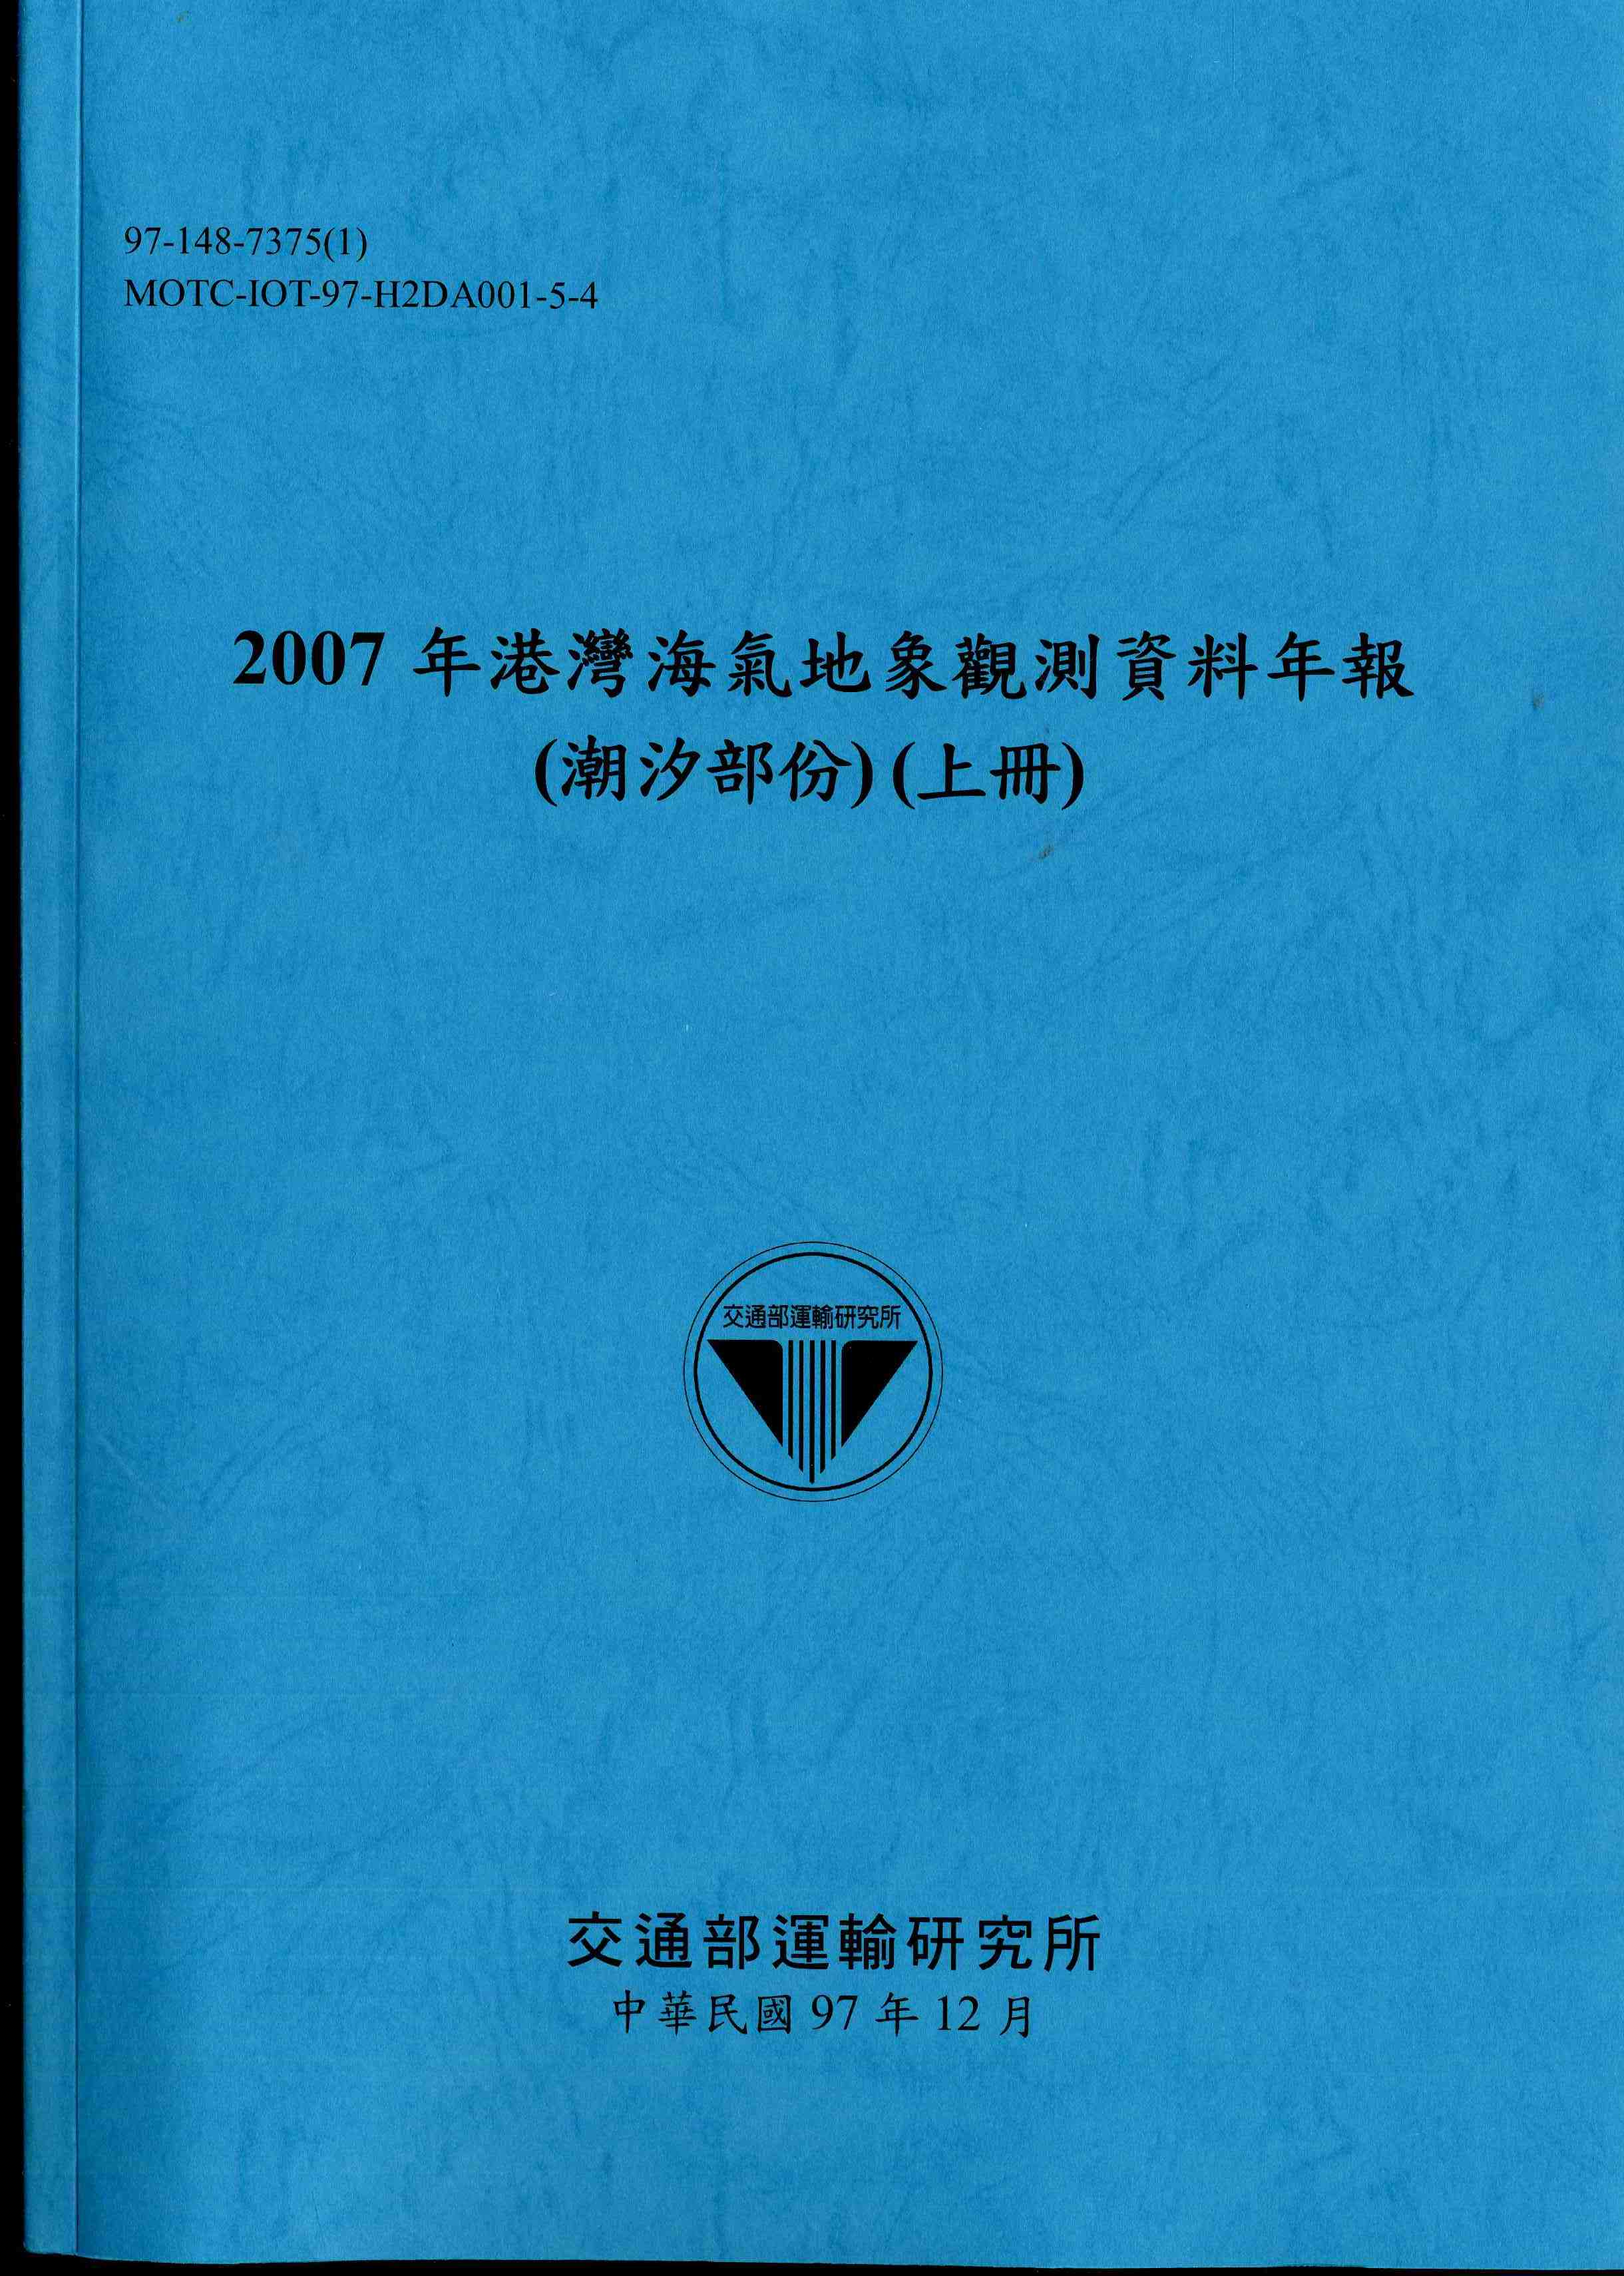 2007年港灣海氣地象觀測資料年報(潮汐部份)(上冊)